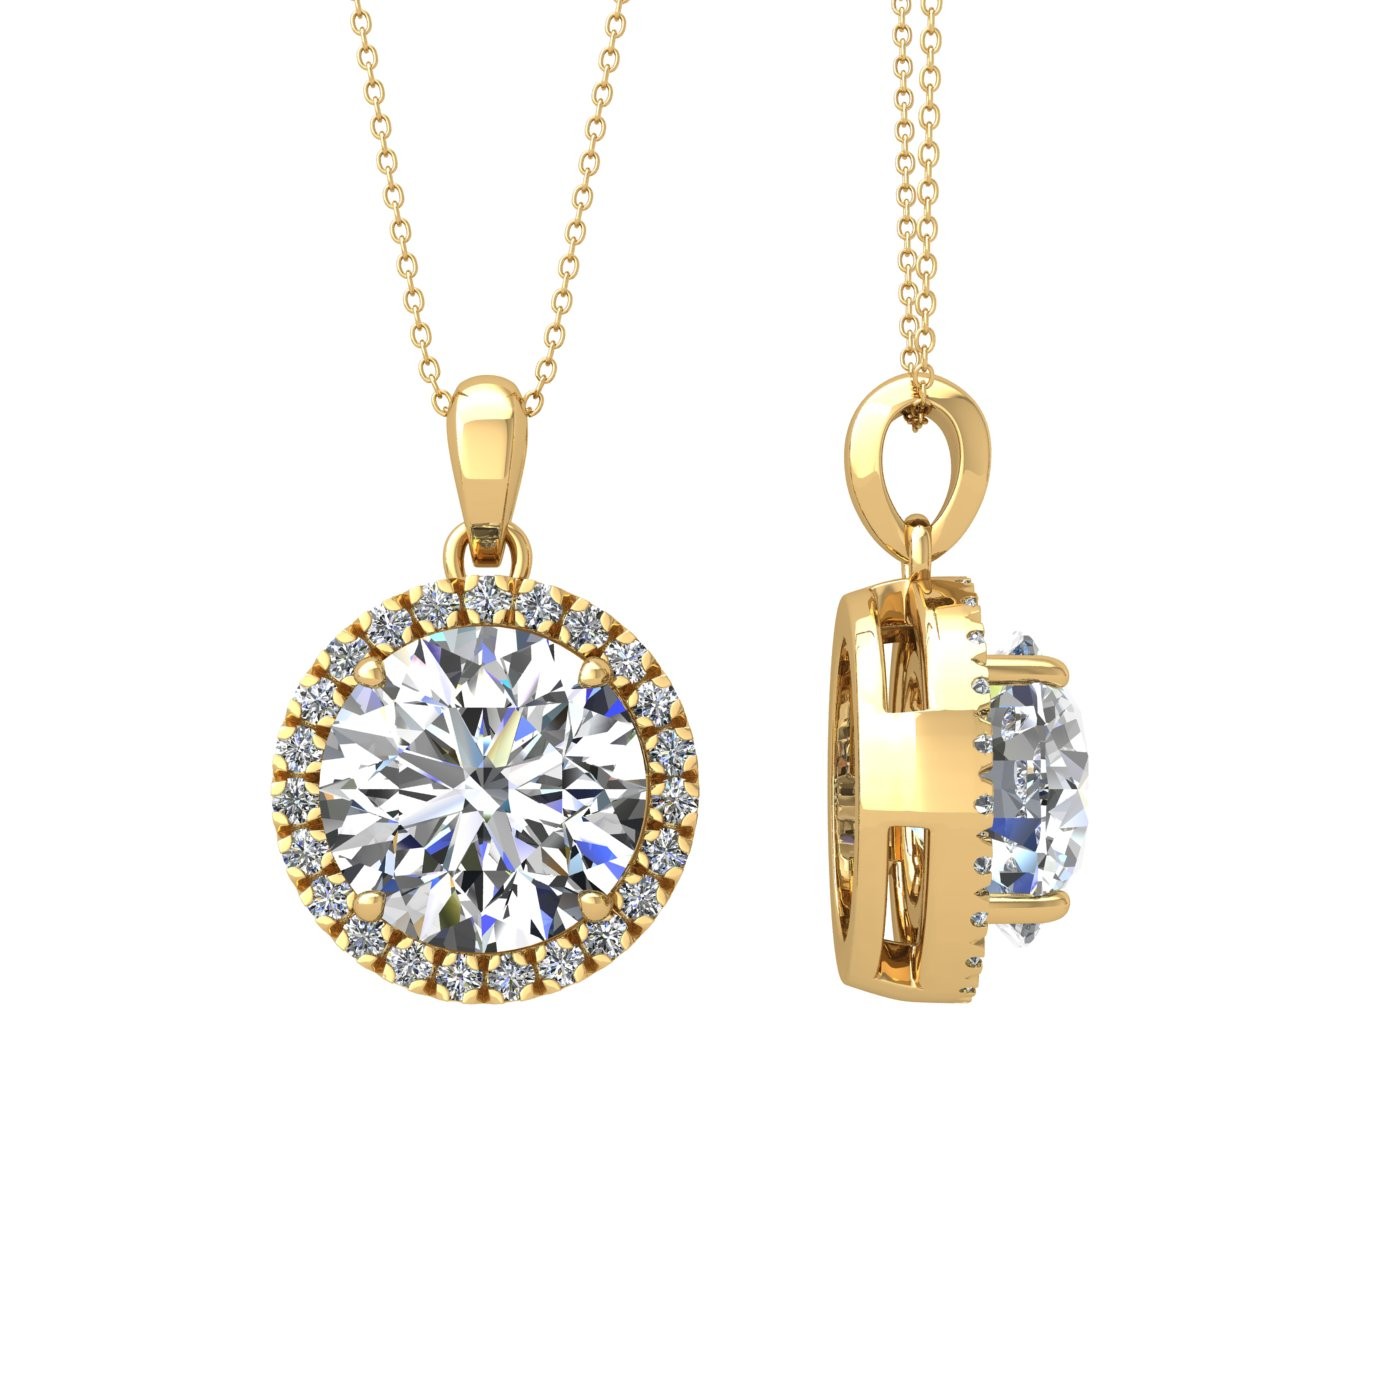 18k wit goud  2 ct 4 griffen round shape diamanten hanger met diamanten pavÉ set halo inclusief ketting los van de hanger Photos & images